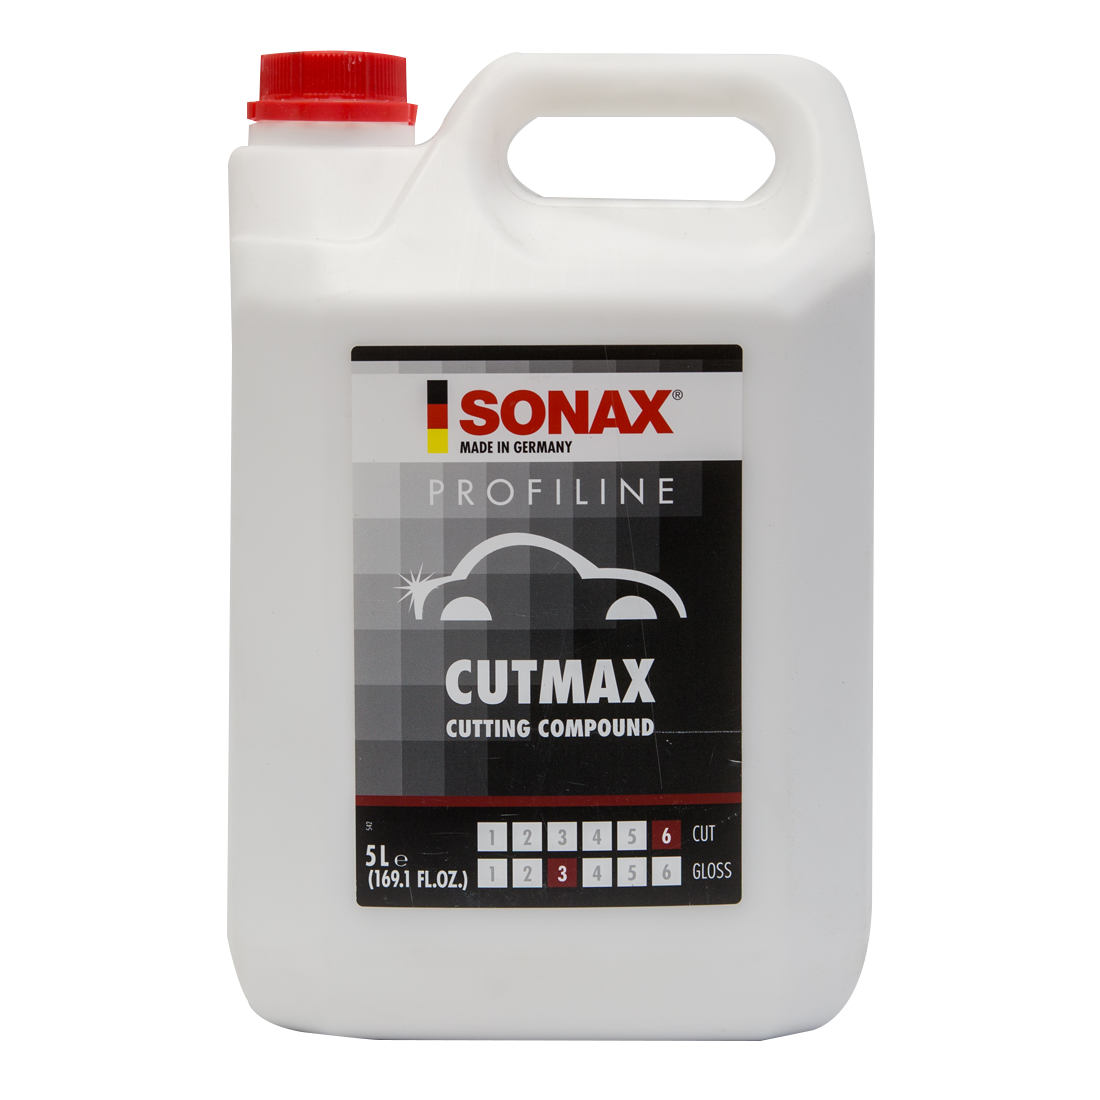 SONAX Profiline CutMax 06-03 5L - Rotary